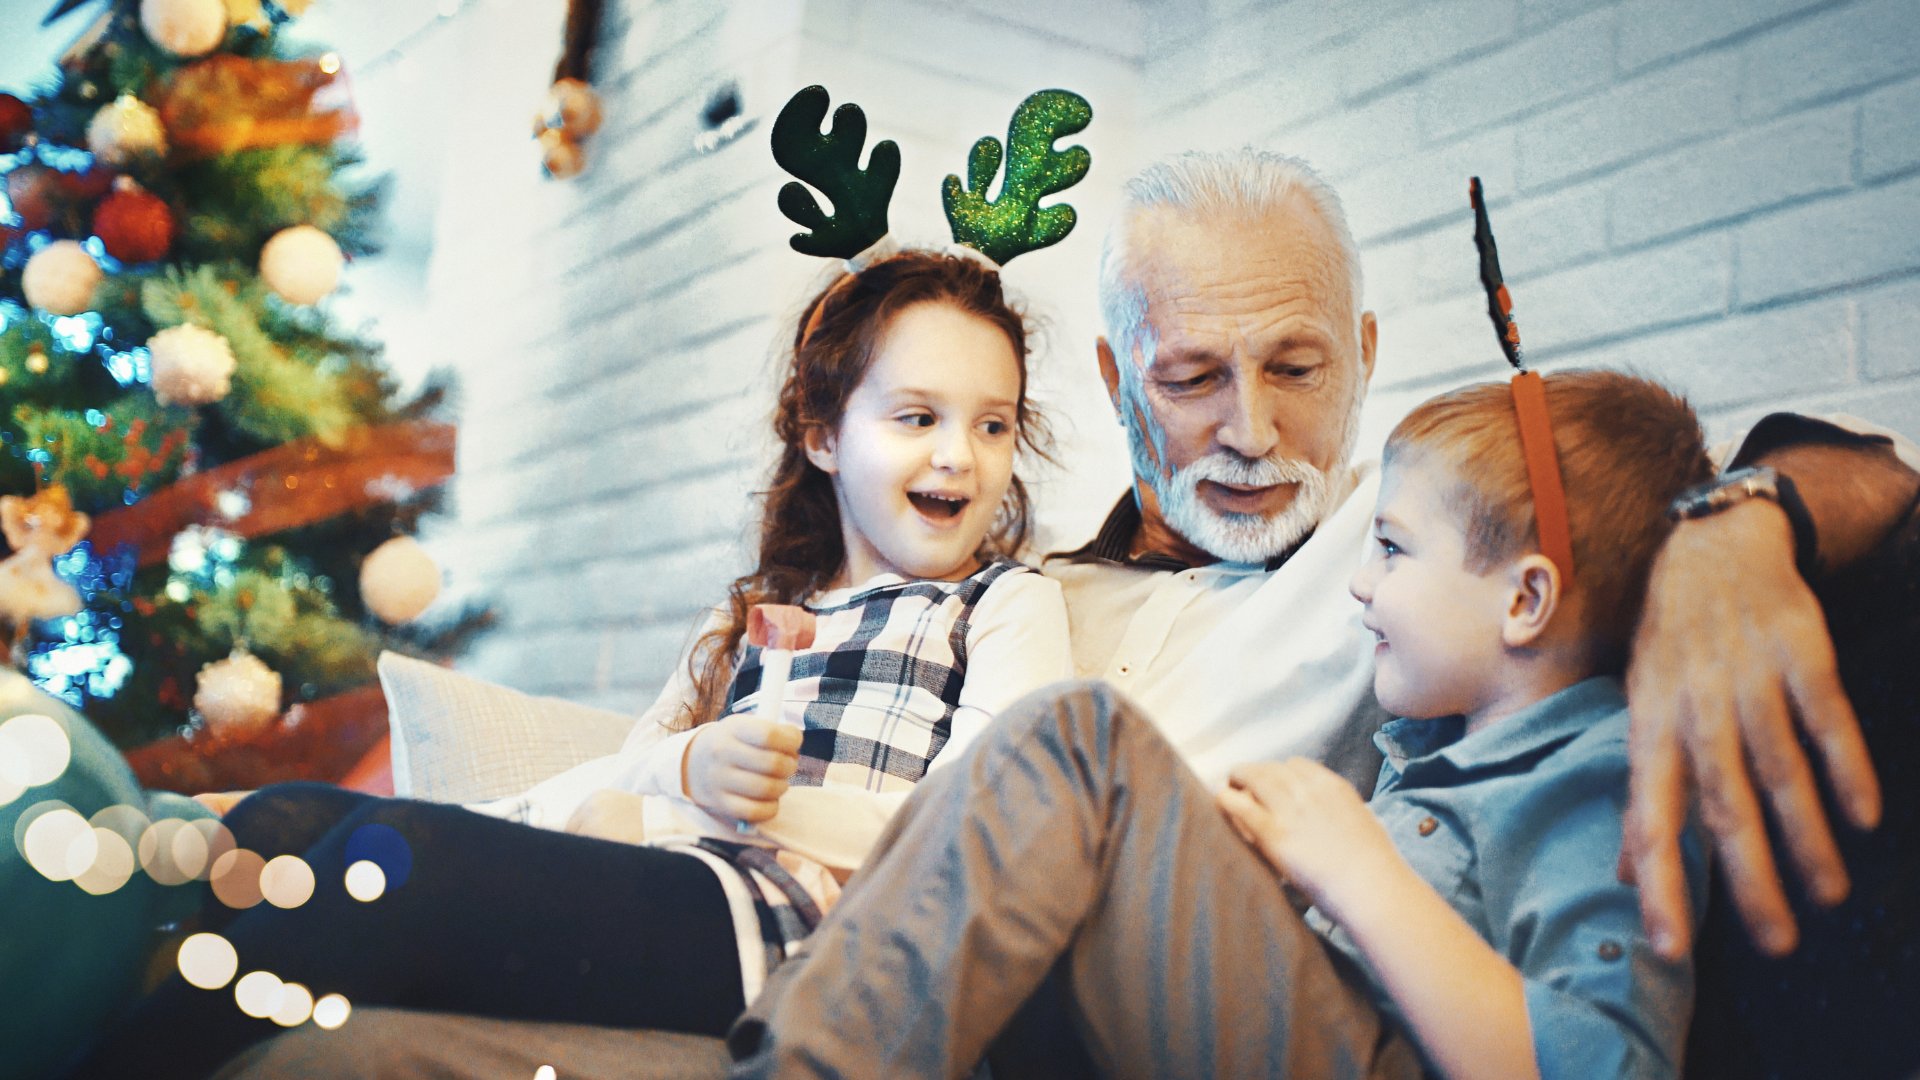 Um homem sentado próximo a duas crianças. À esquerda, uma árvore natalina.